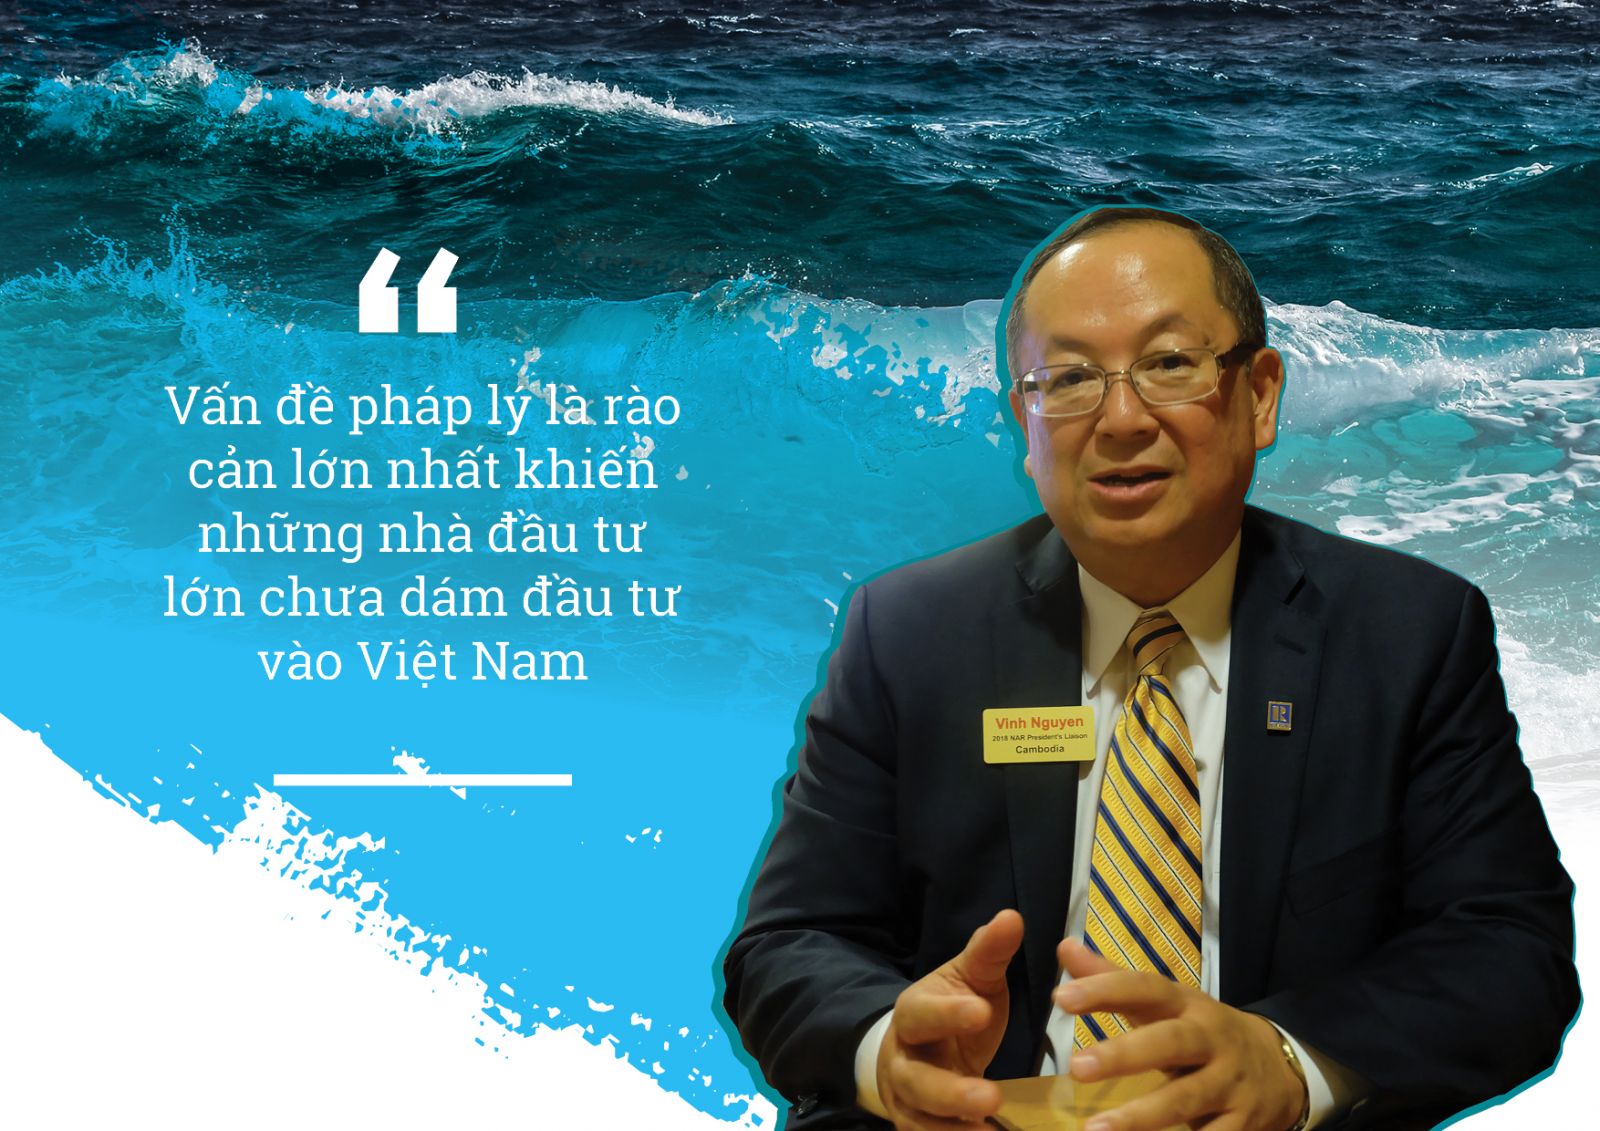 Ông Vinh Nguyễn, đại diện của Chủ tịch Hiệp hội Bất động sản Hoa Kỳ tại Campuchia